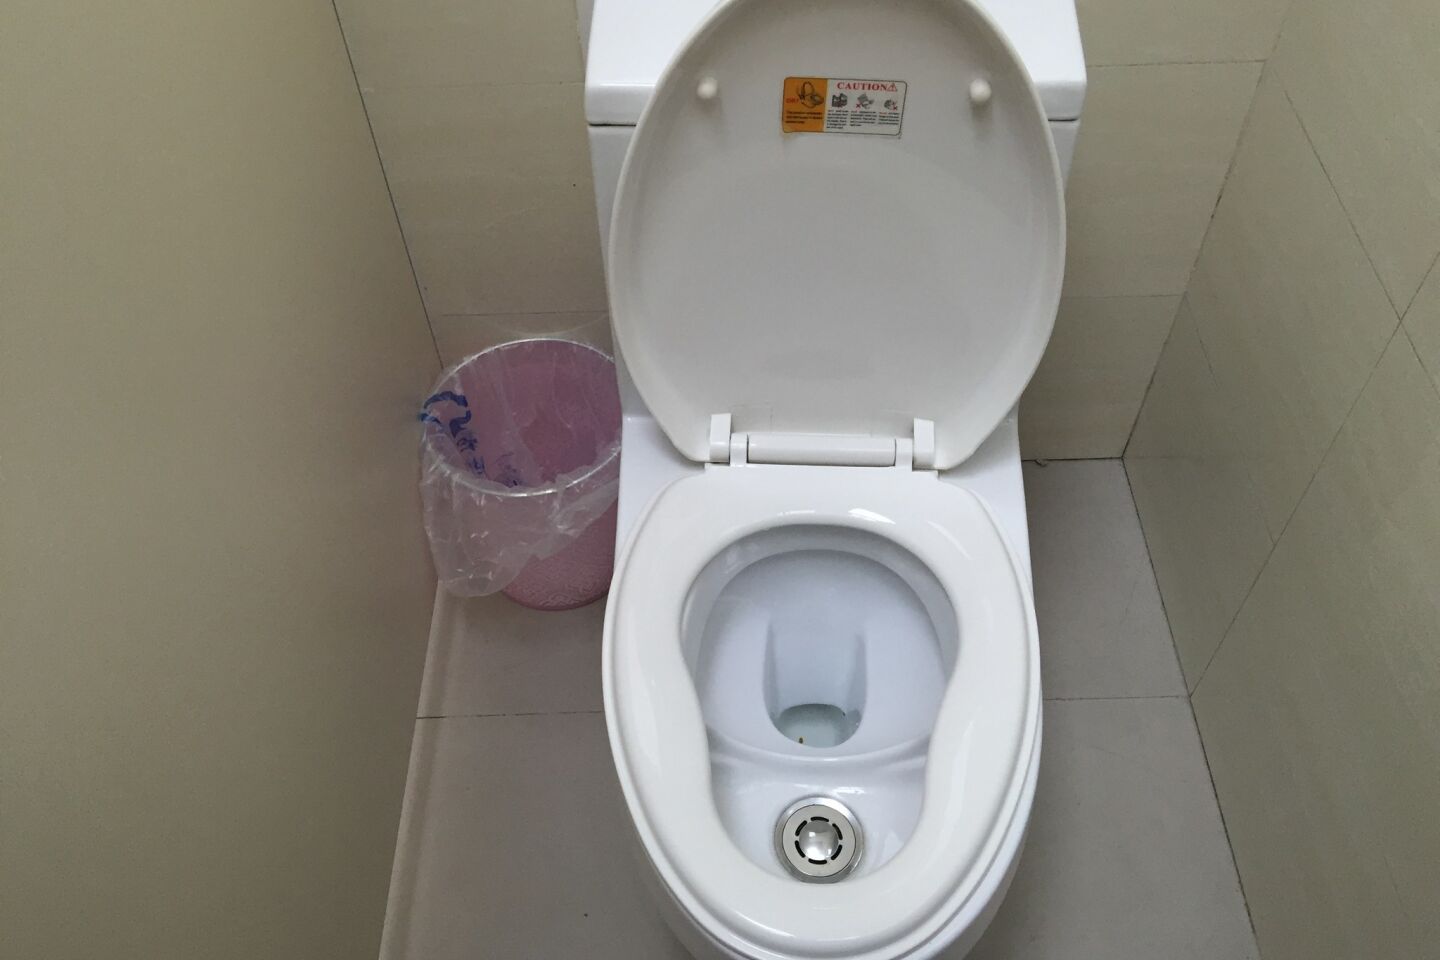 Beijing restroom